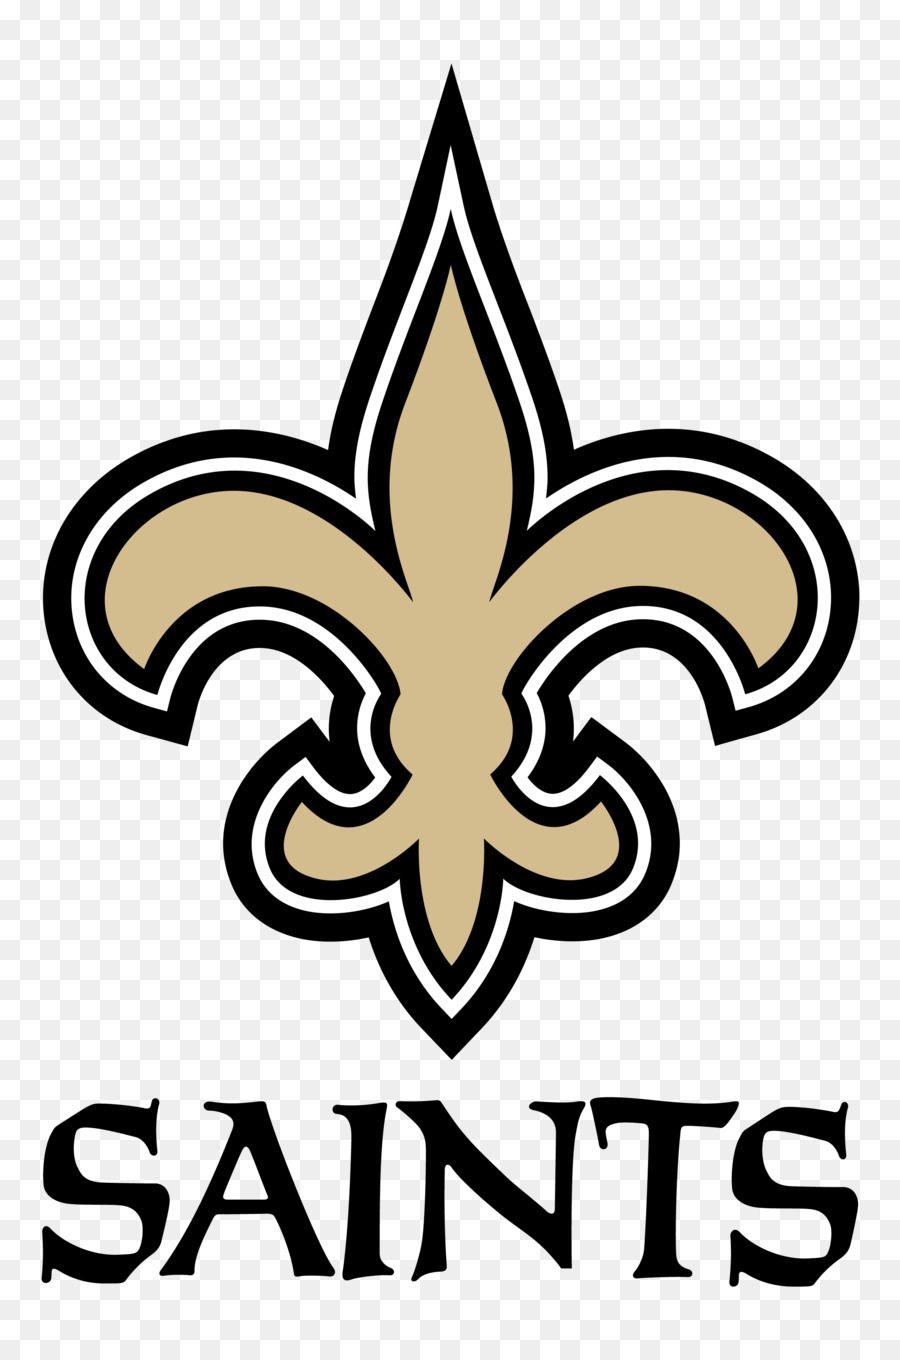 NFL Saints Logo - 2016 New Orleans Saints season Mercedes-Benz Superdome NFL Saints ...